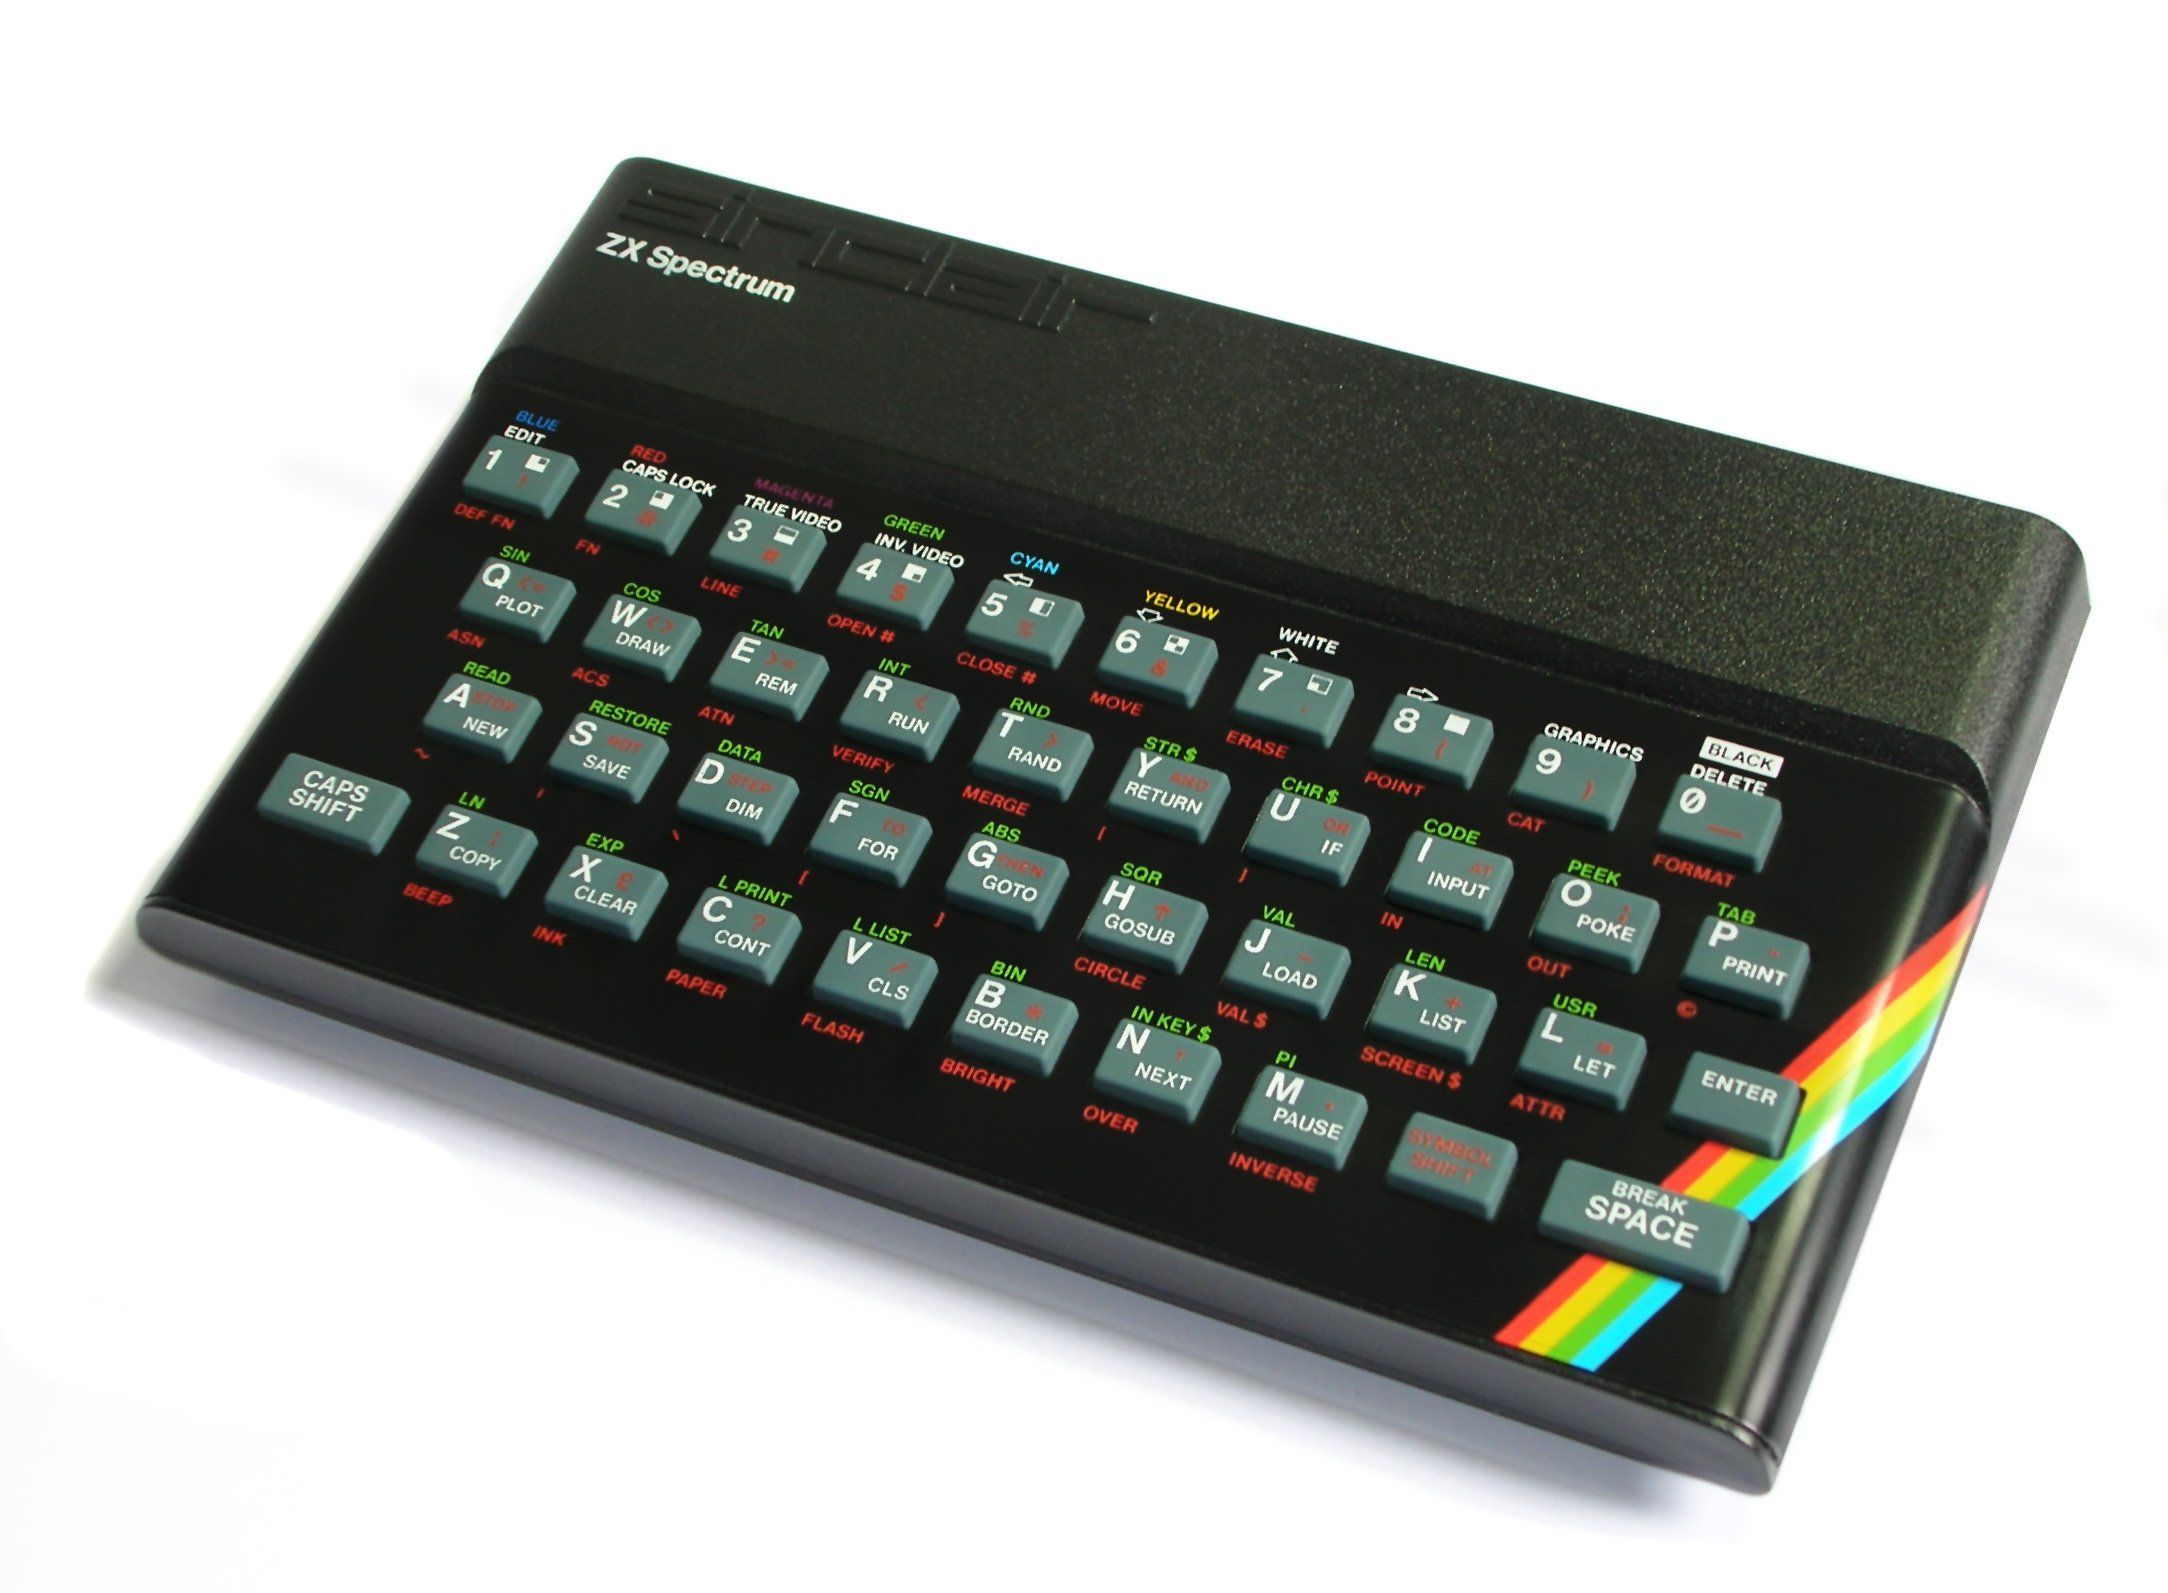 ZX Spectrum Vega : le ZX Spectrum renaît de ses cendres